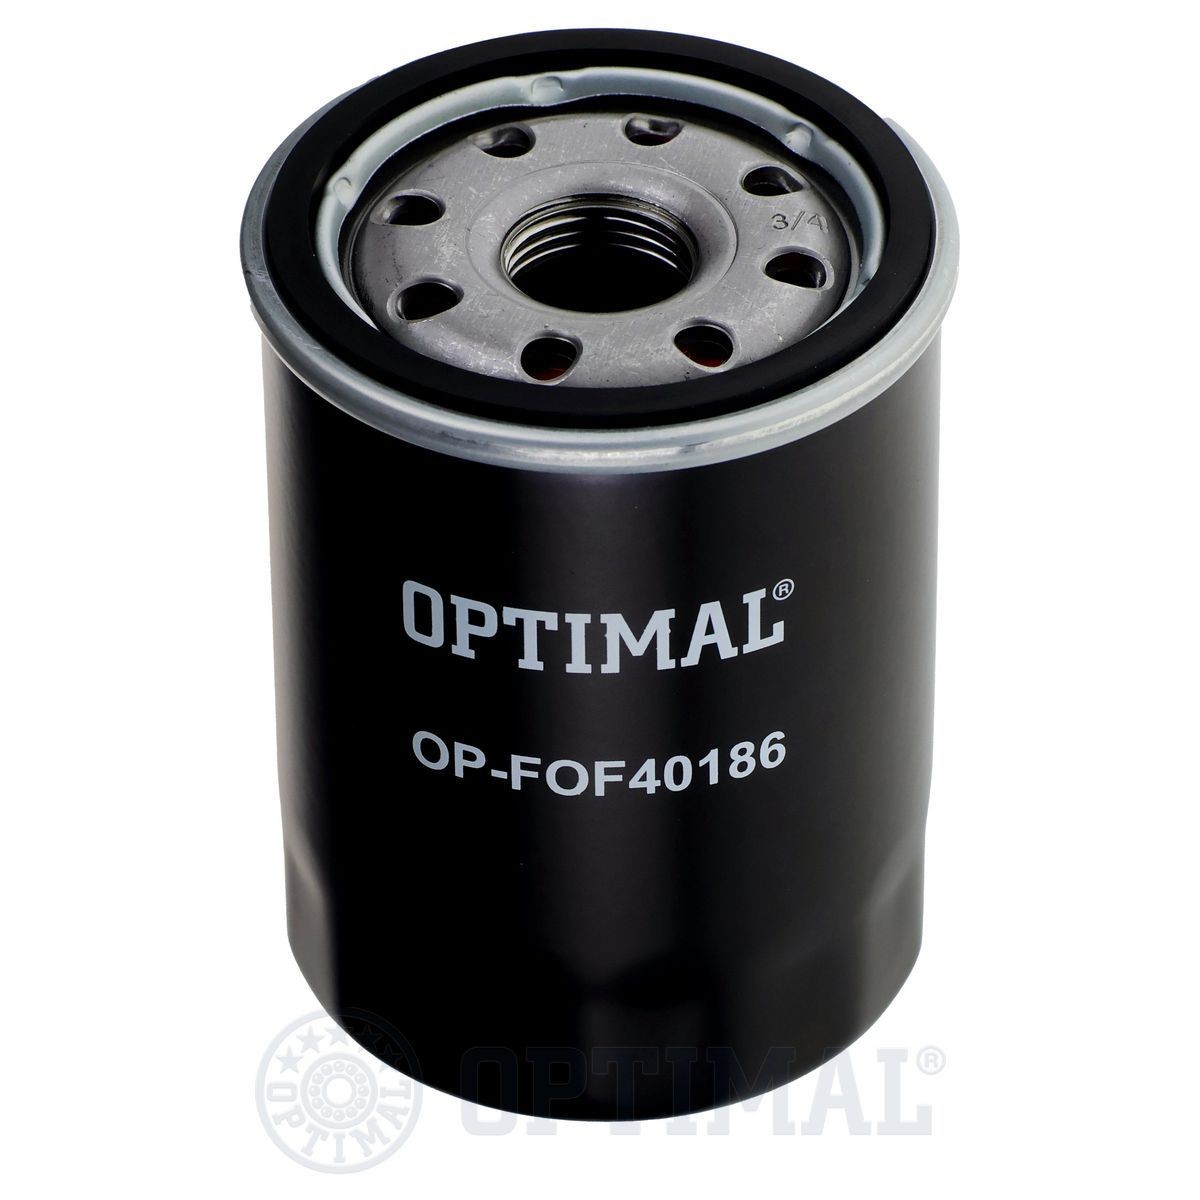 OPTIMAL OP-FOF40186 Oil filter 90915-TA002